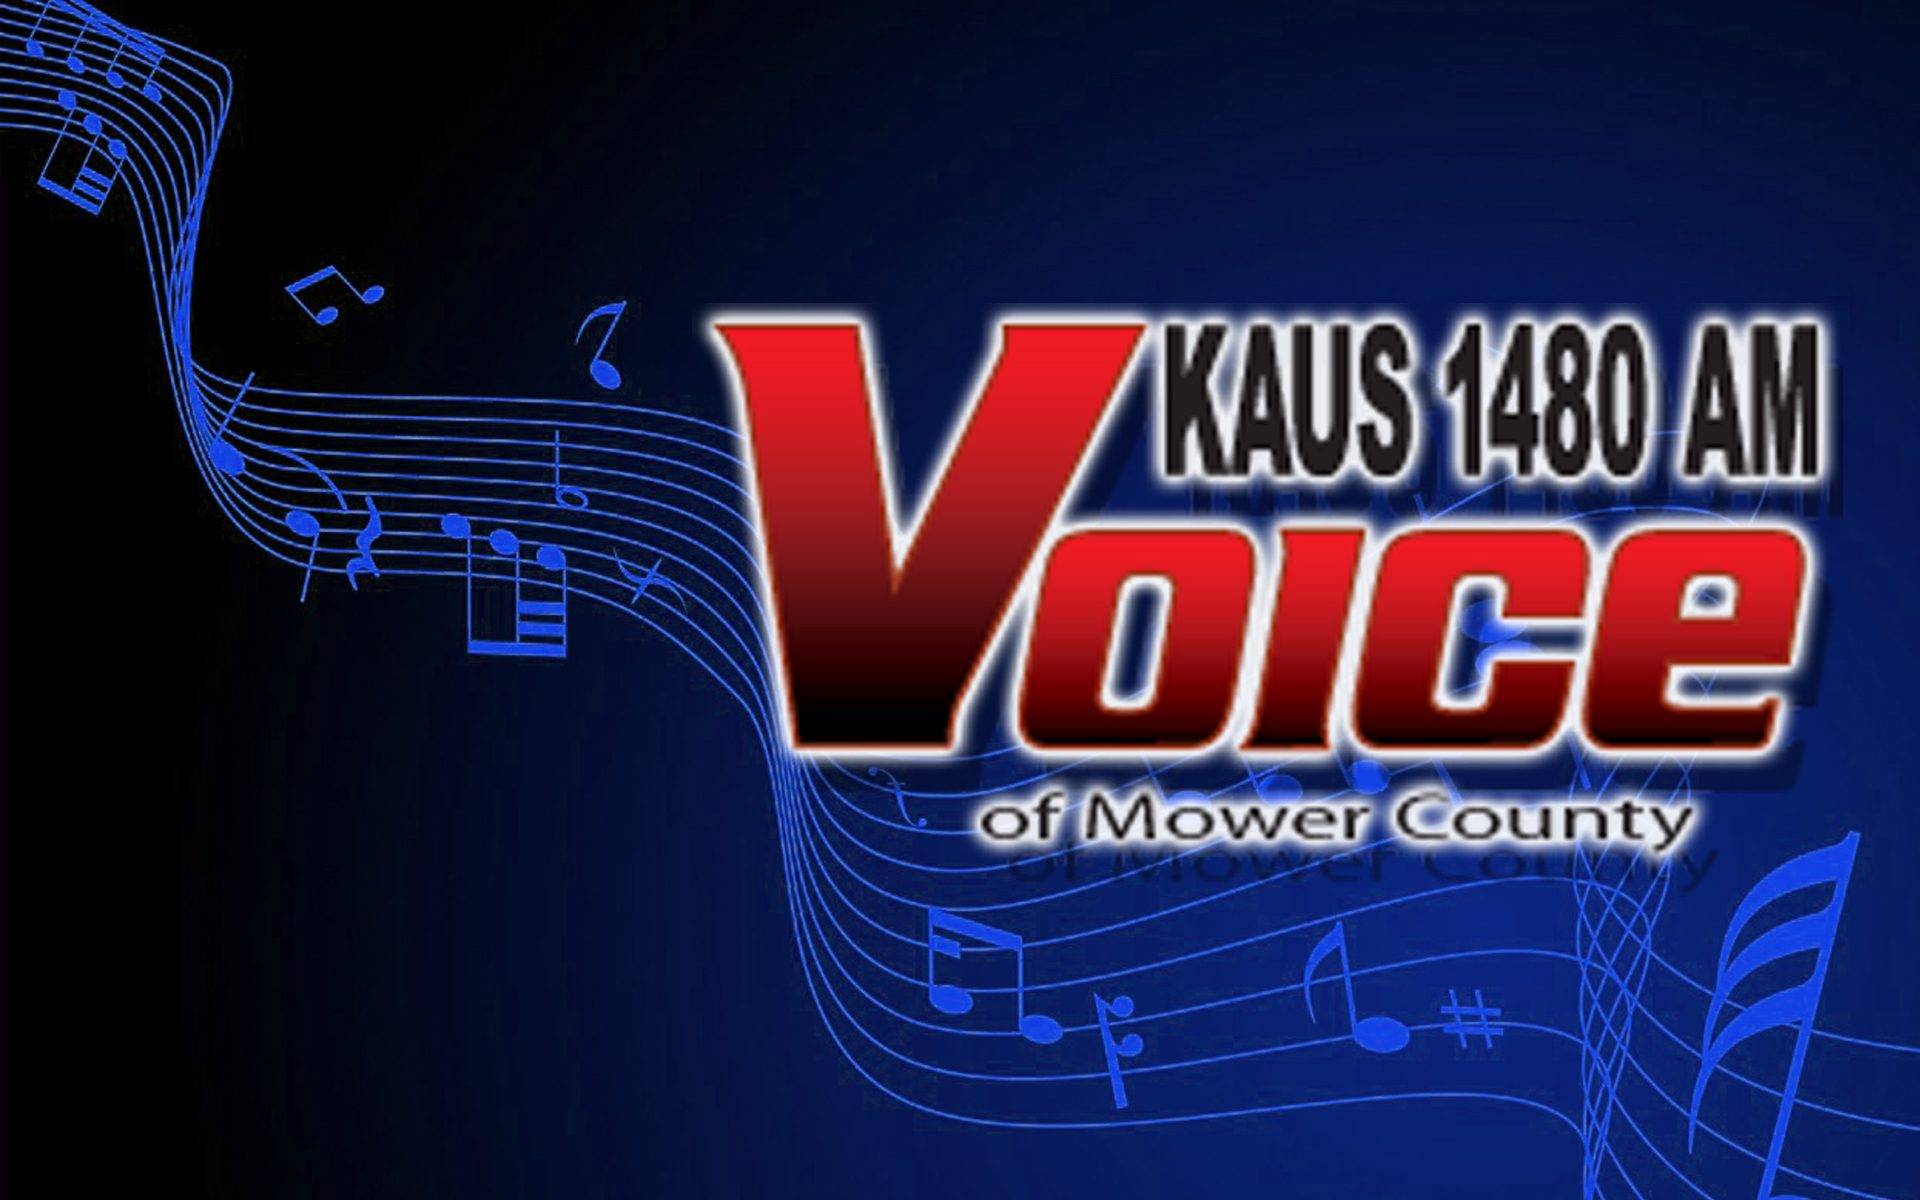 KAUS AM Radio